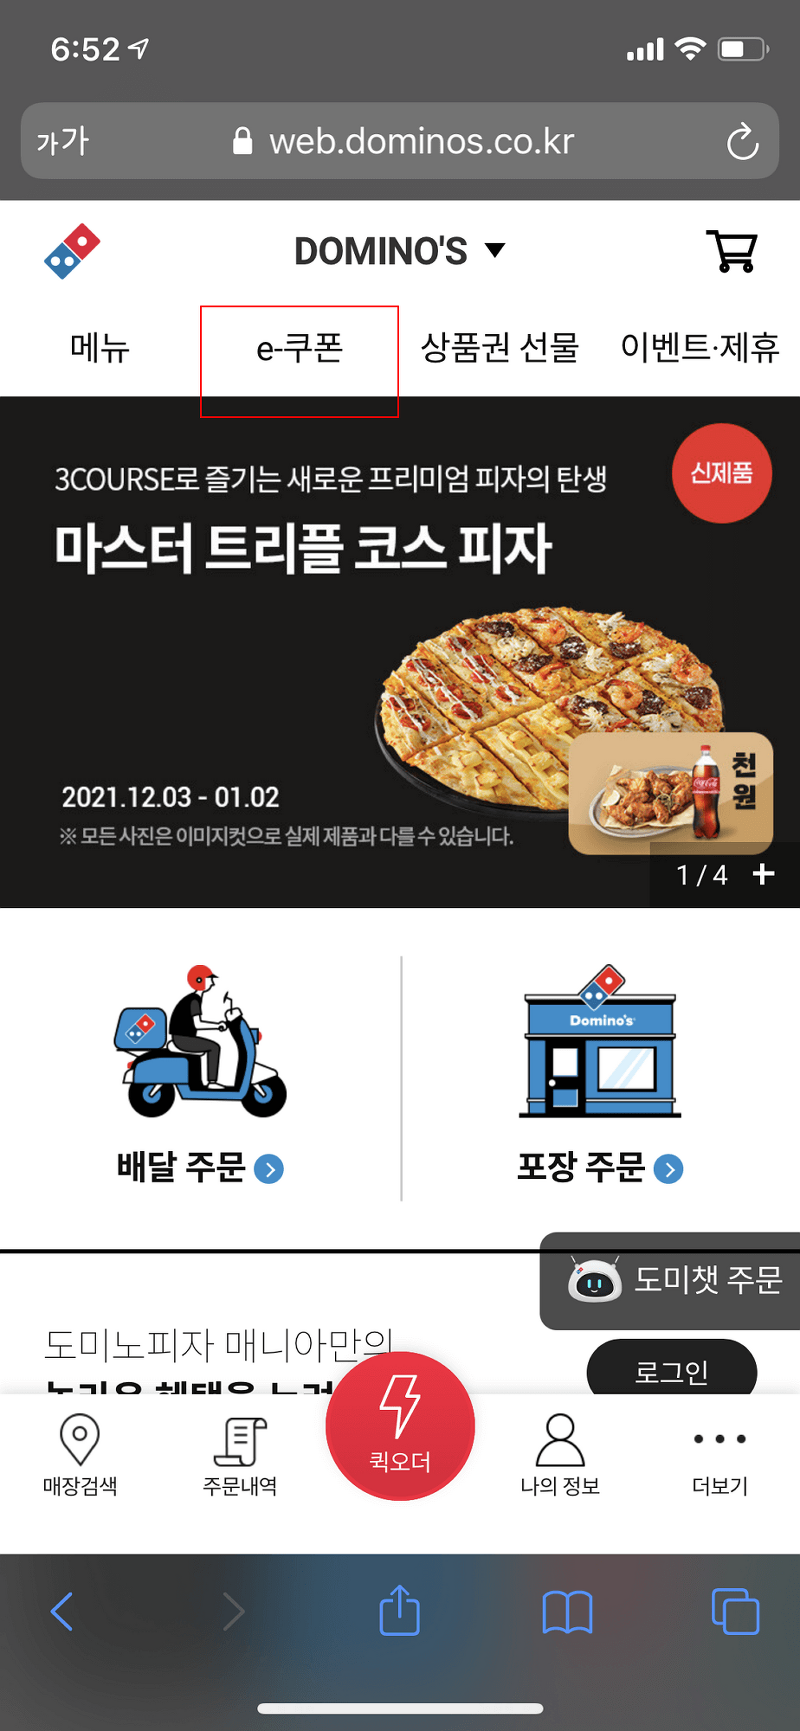 모바일 기프티콘으로 도미노 피자 주문하기(feat. 비대면 주문)